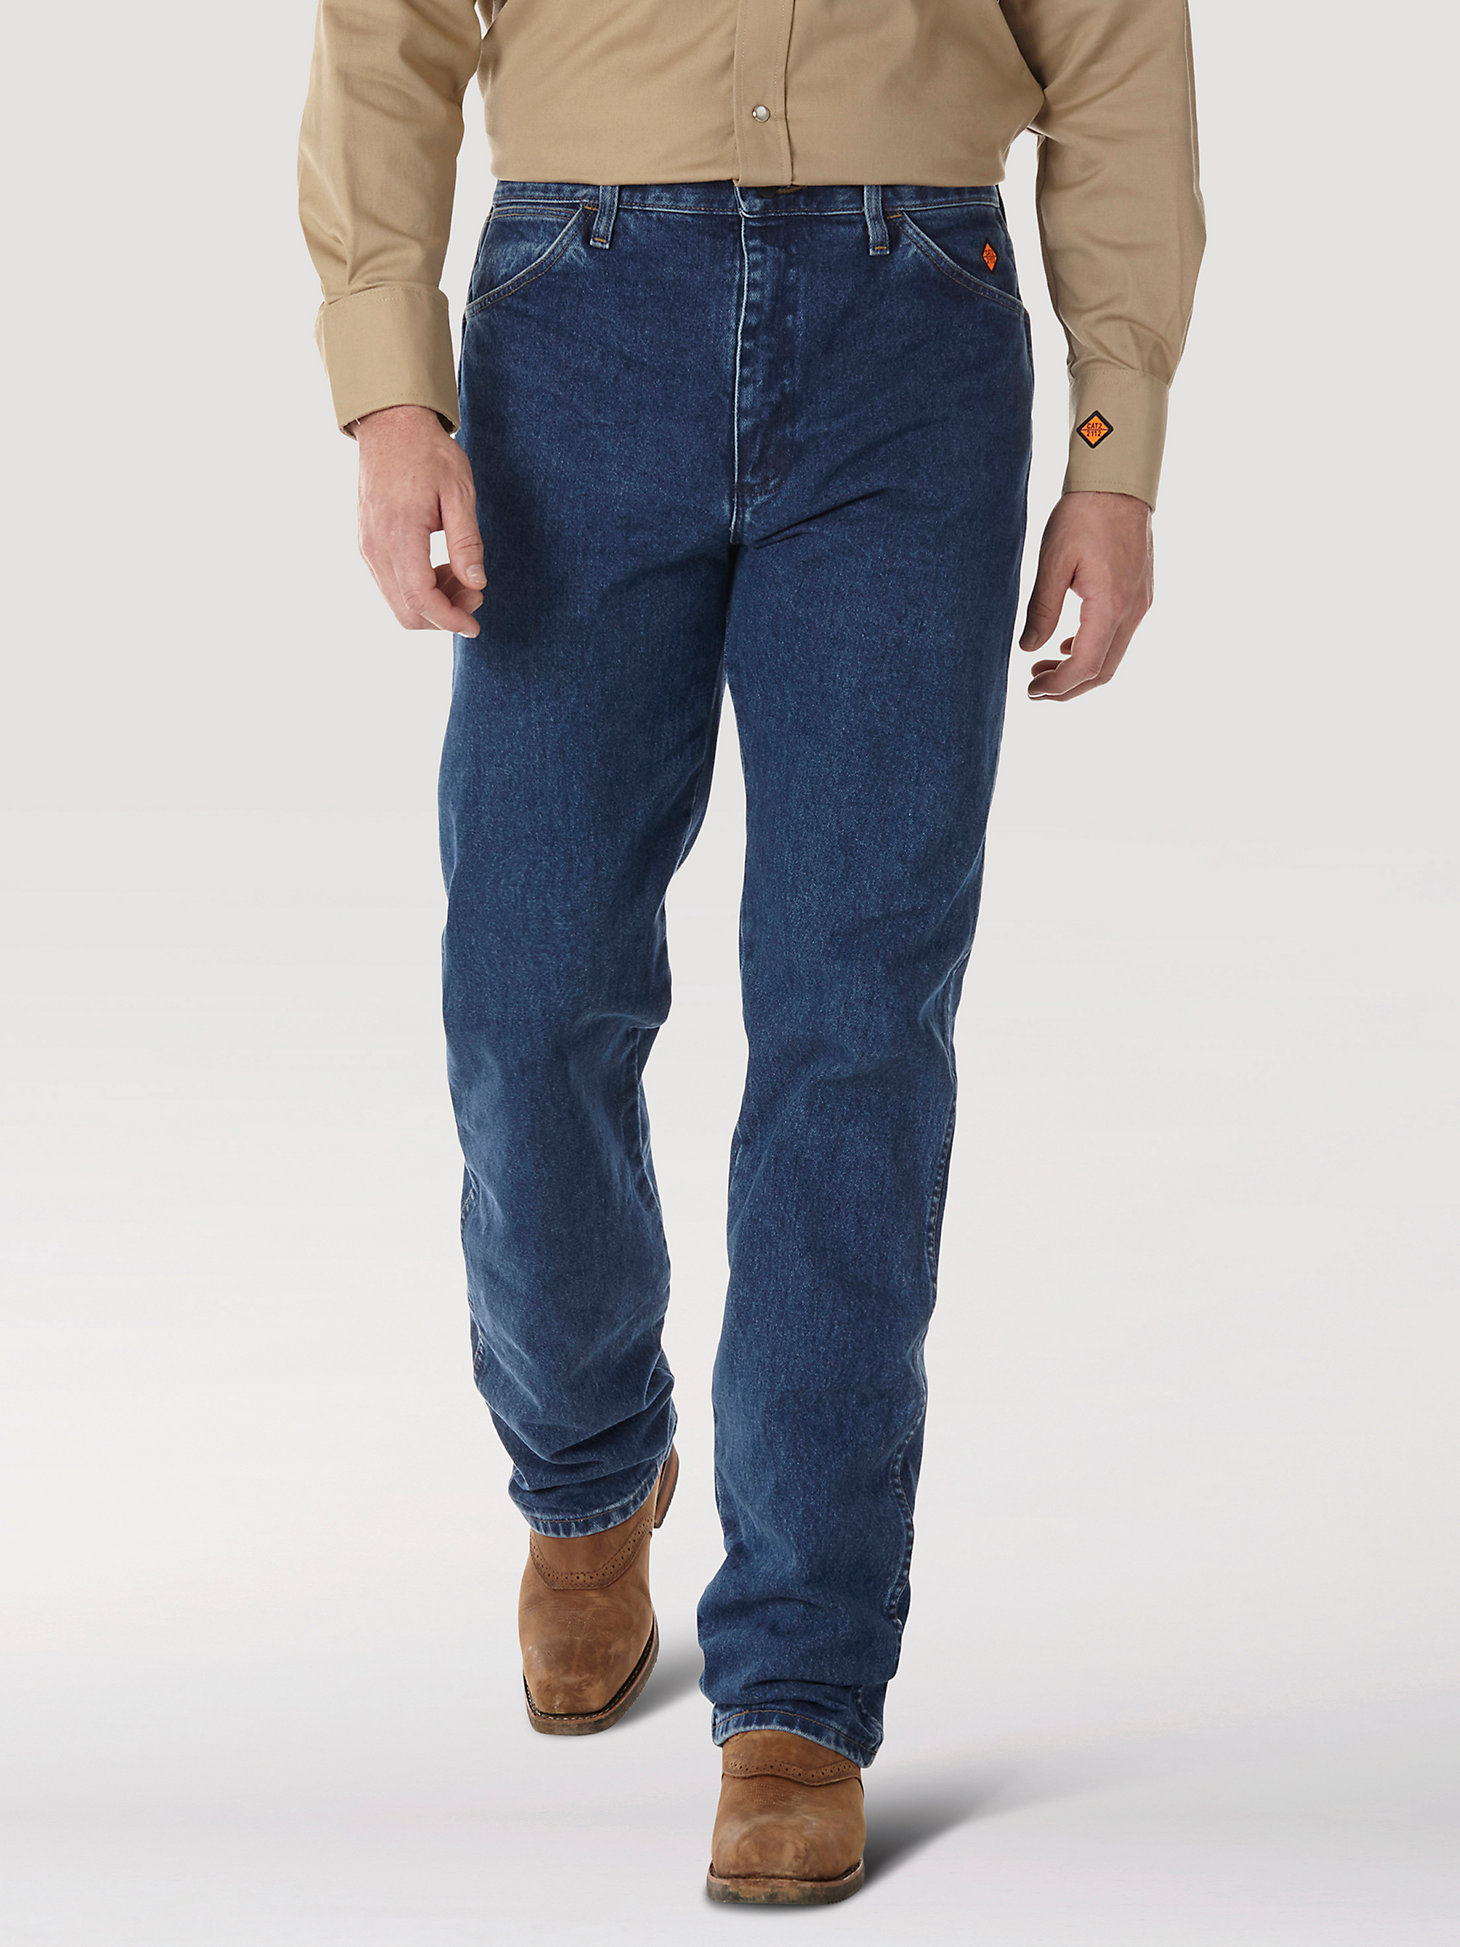 Wrangler Durable JeansStraight LegRegular Fit 